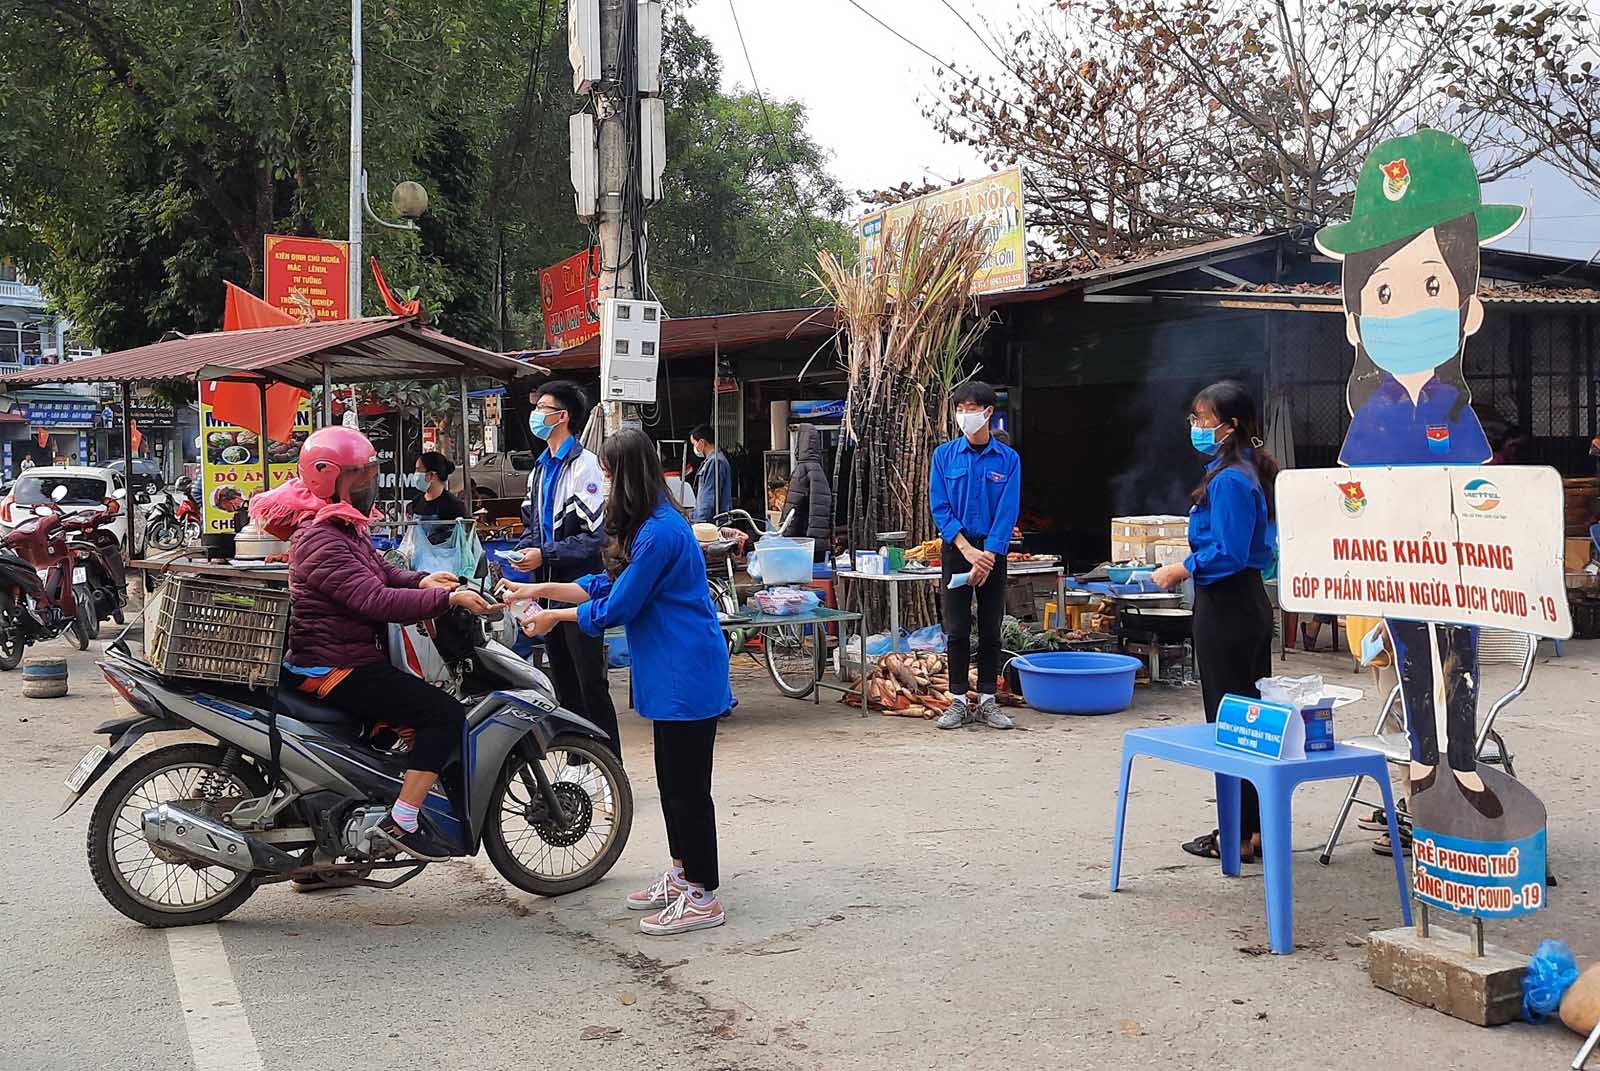 ĐVTN thị trấn Phong Thổ phát khẩu trang miễn phí và hướng dẫn người dân sát khuẩn tay phòng chống dịch Covid-19.